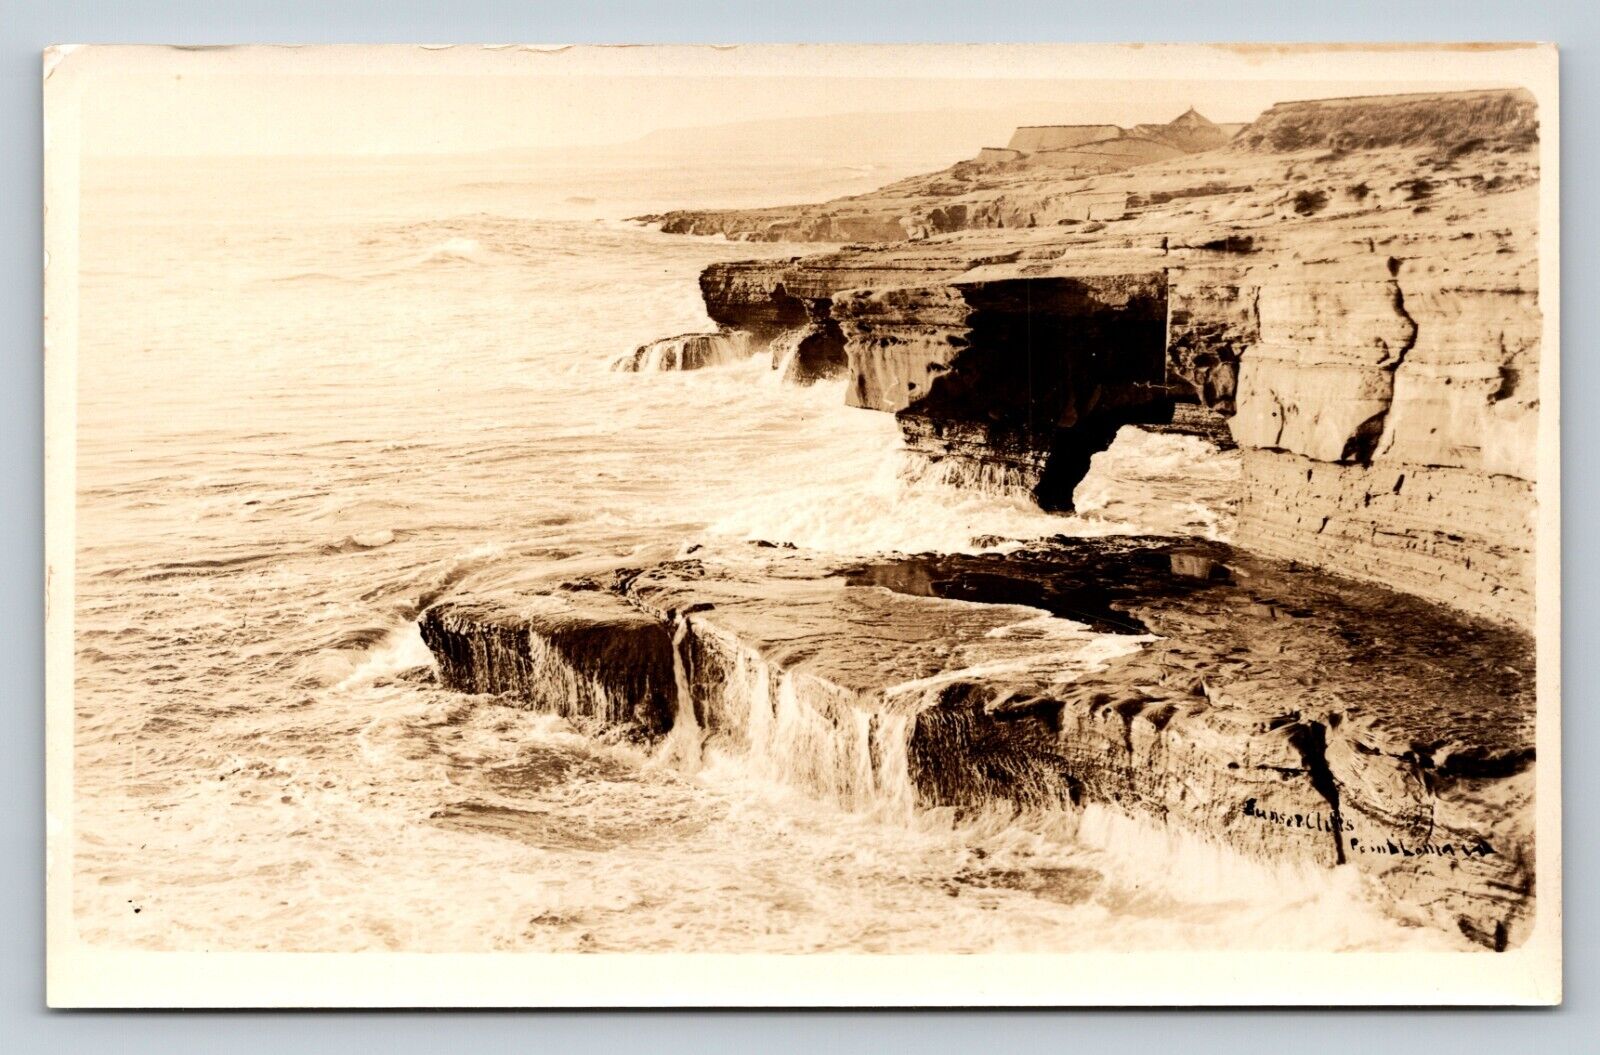 RPPC Waves Crashing Rugged Coastline B&W VINTAGE Postcard AZO 1925-1940s